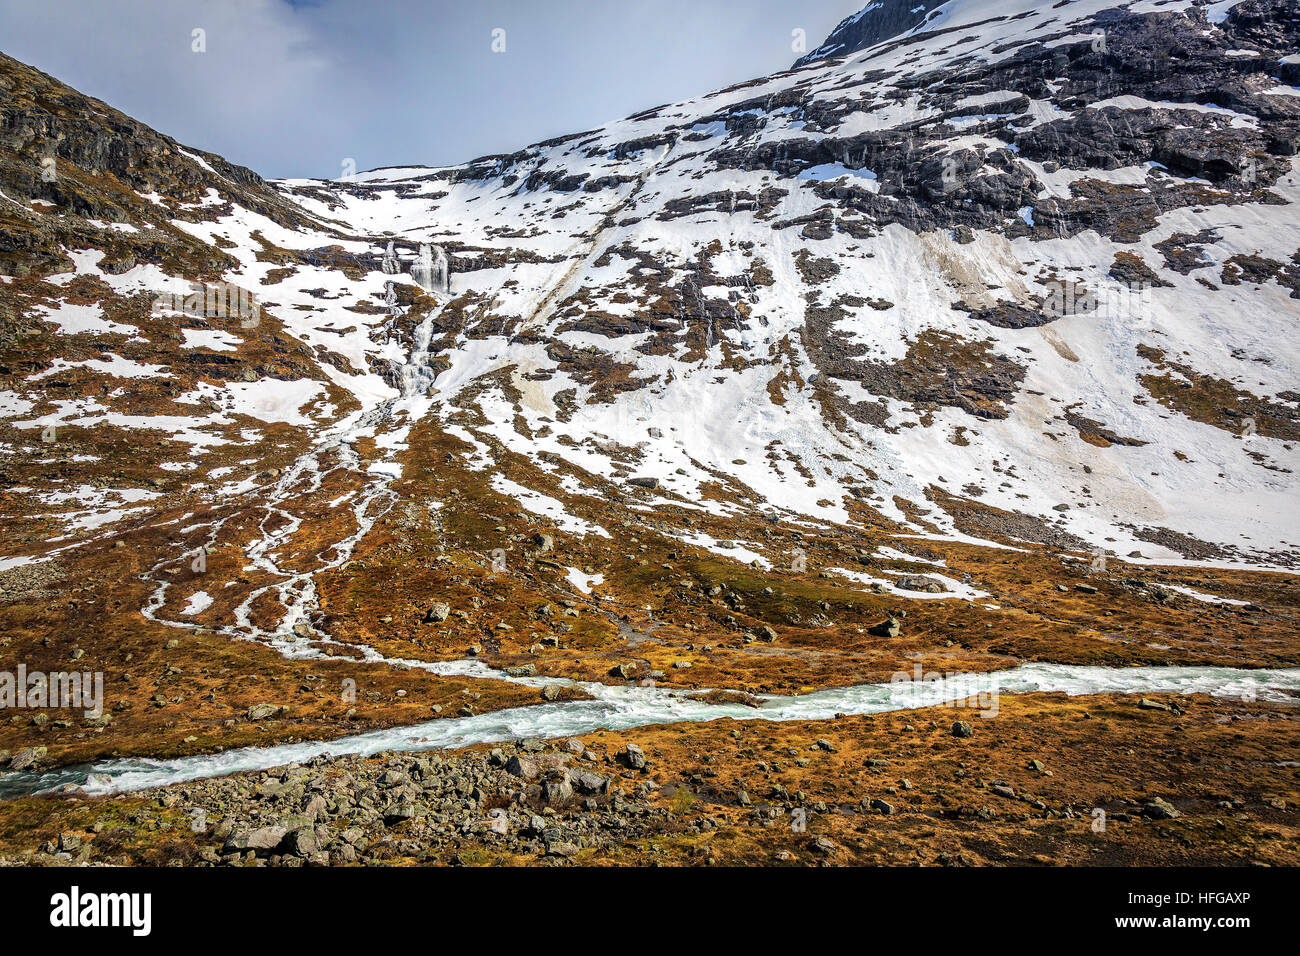 Rivoli di scongelamento di ghiaccio d'acqua che scorre giù per la valle. Preso in primavera in Norvegia Foto Stock